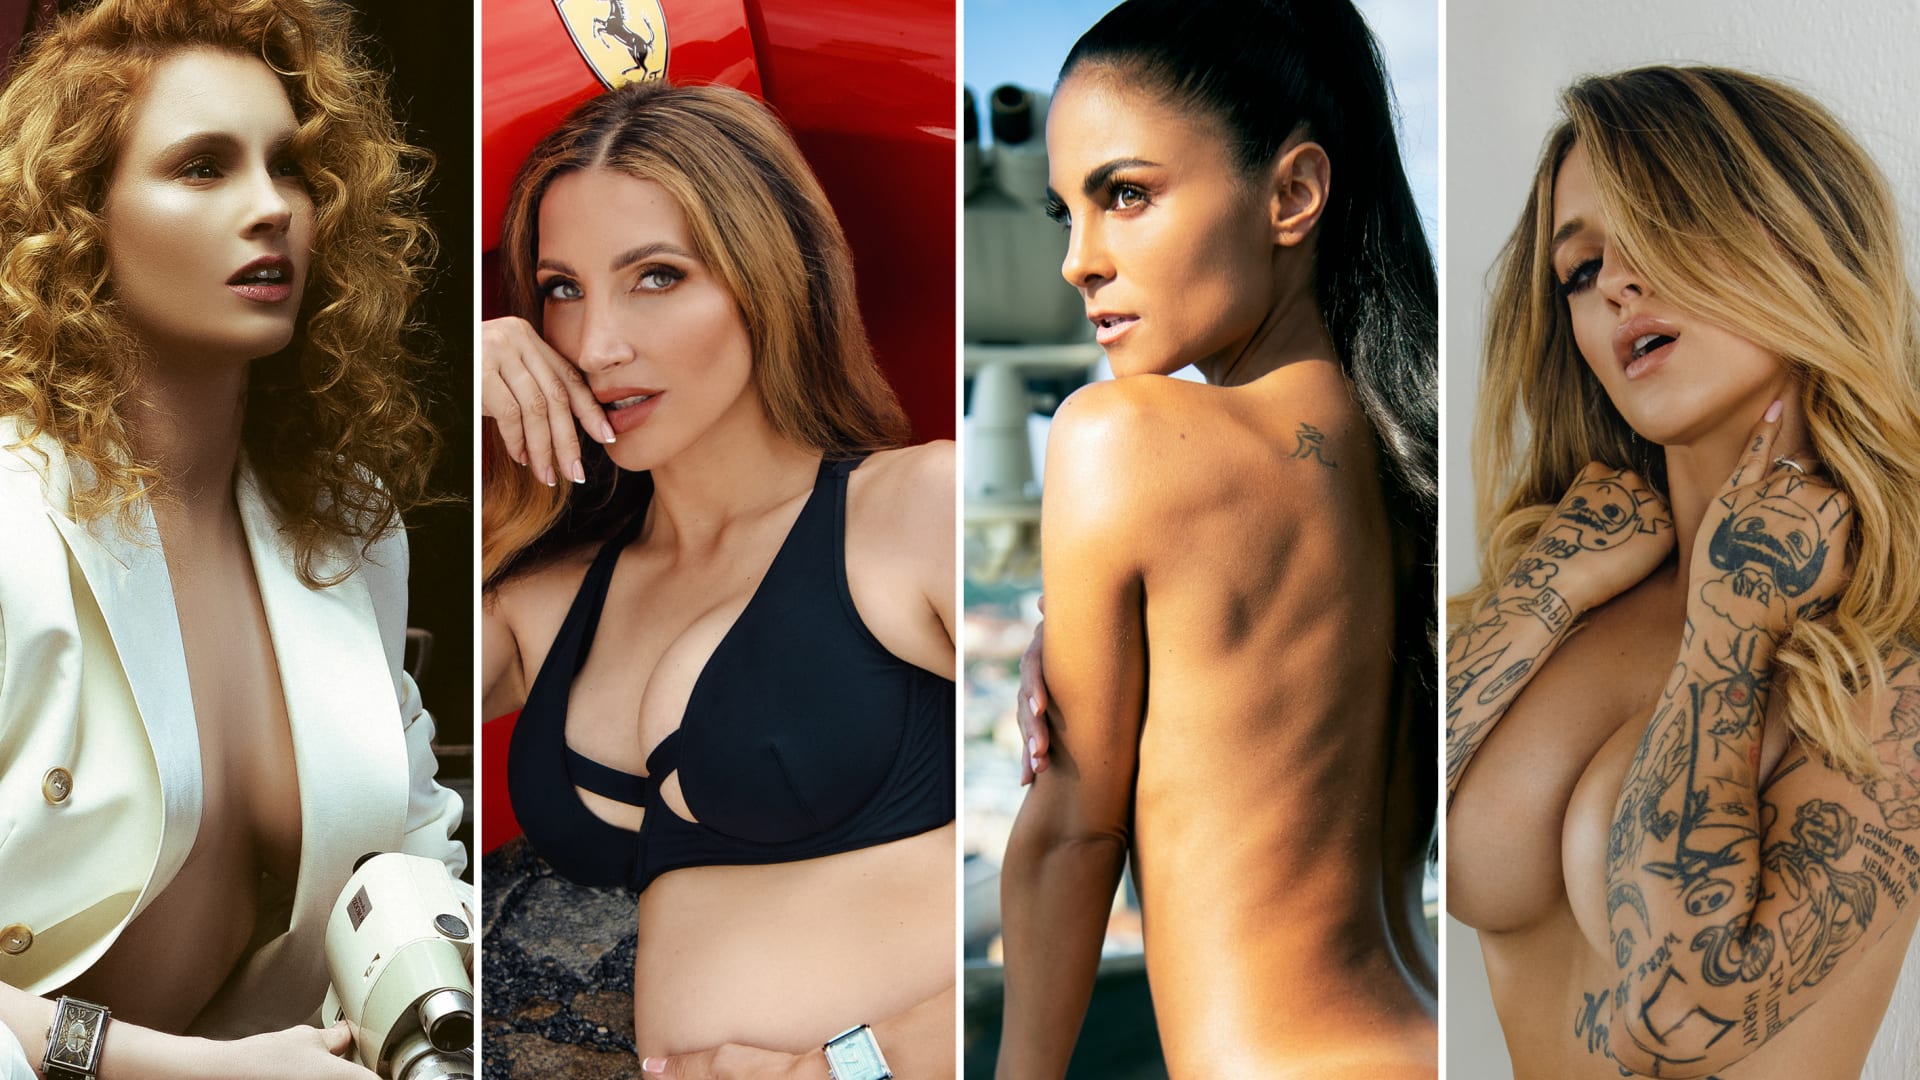 Kvarteto dam, které v nedávné minulosti oslovily čtenáře Playboye, má o letních měsících jasno.